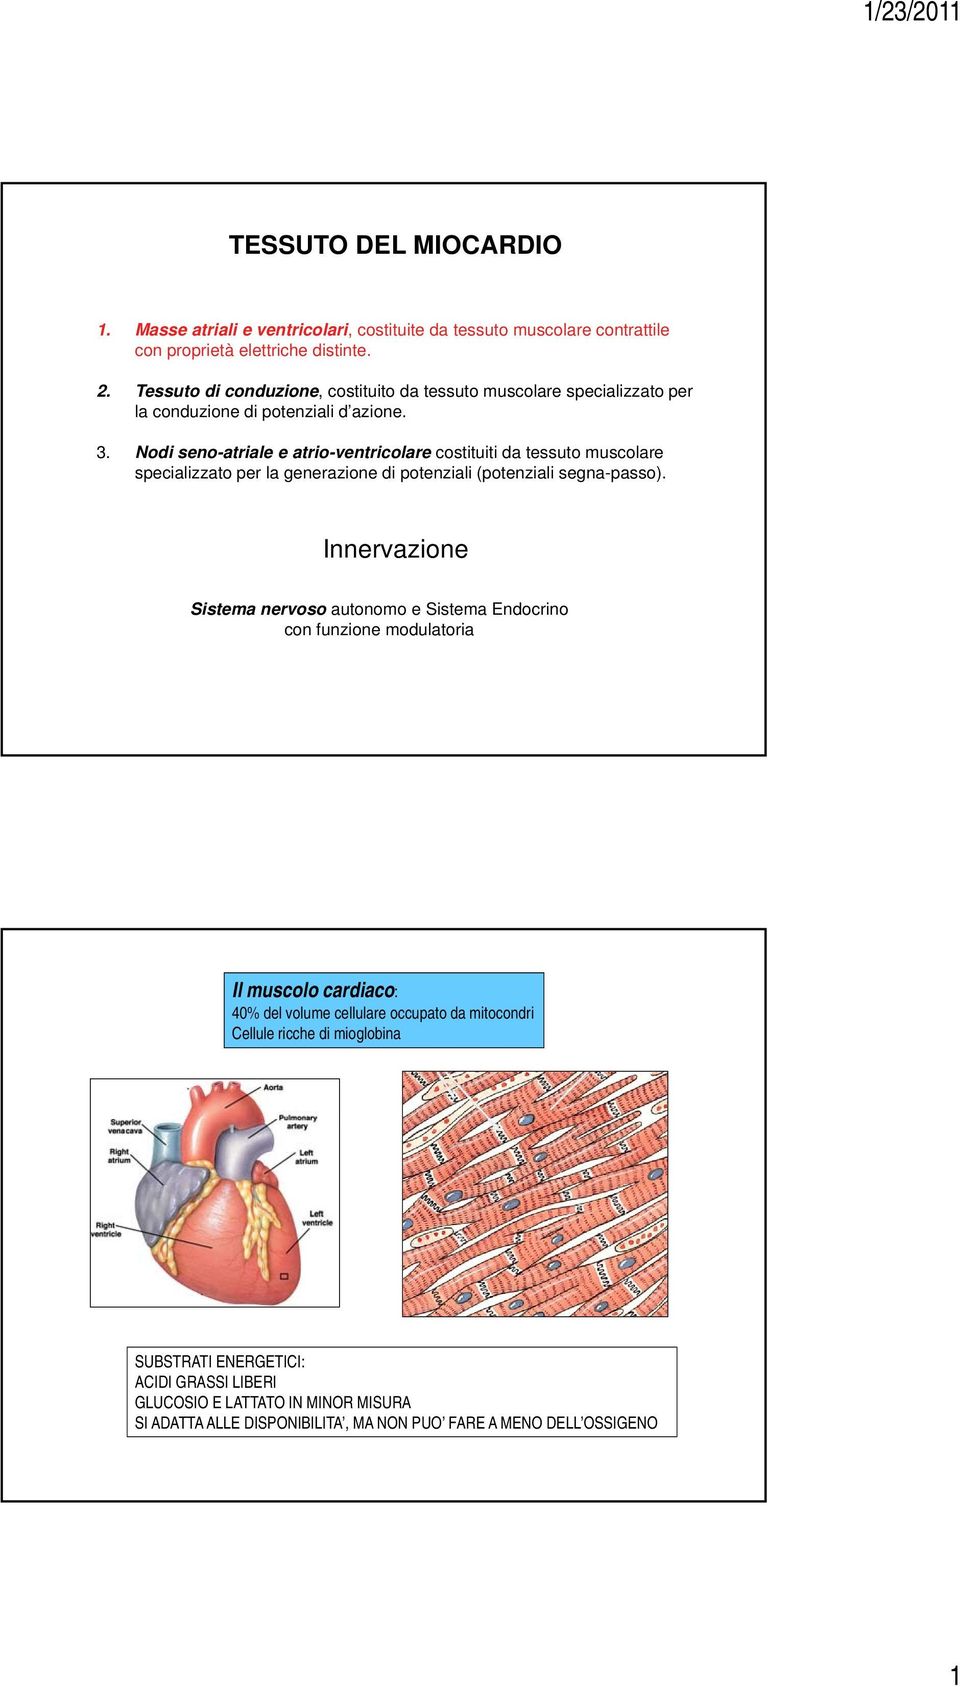 Nodi seno-atriale e atrio-ventricolare costituiti da tessuto muscolare specializzato per la generazione di potenziali (potenziali segna-passo).